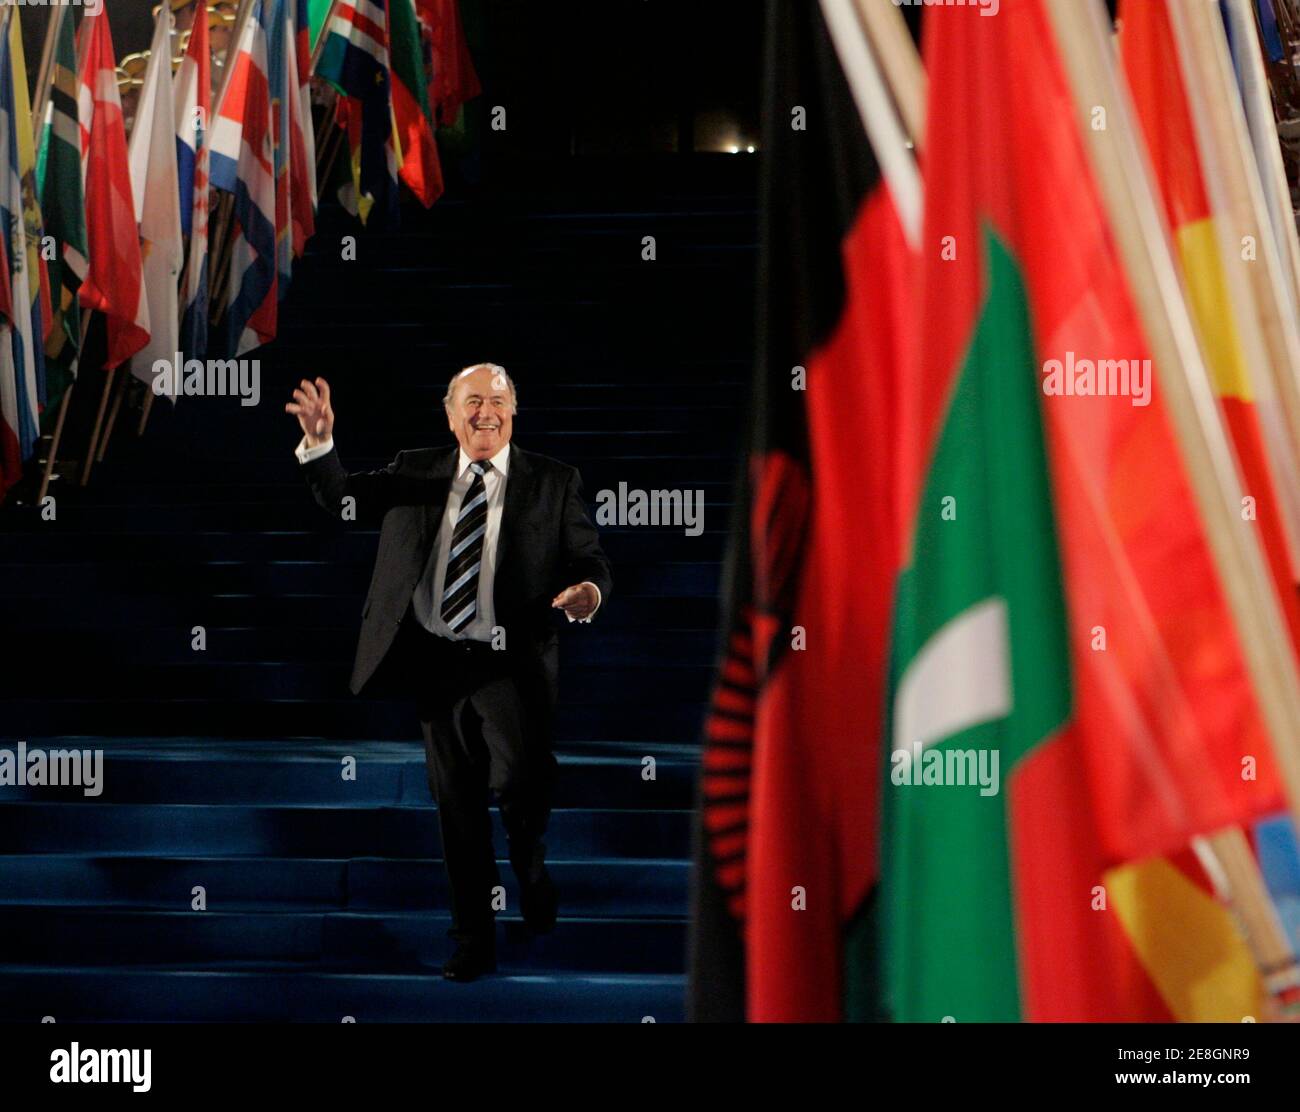 Le président de la FIFA, Sepp Blatter, se fait une vague devant les médias après avoir quitté la cérémonie d'ouverture du 58e congrès de la FIFA à l'Opéra de Sydney le 29 mai 2008. REUTERS/will Burgess (AUSTRALIE) Banque D'Images